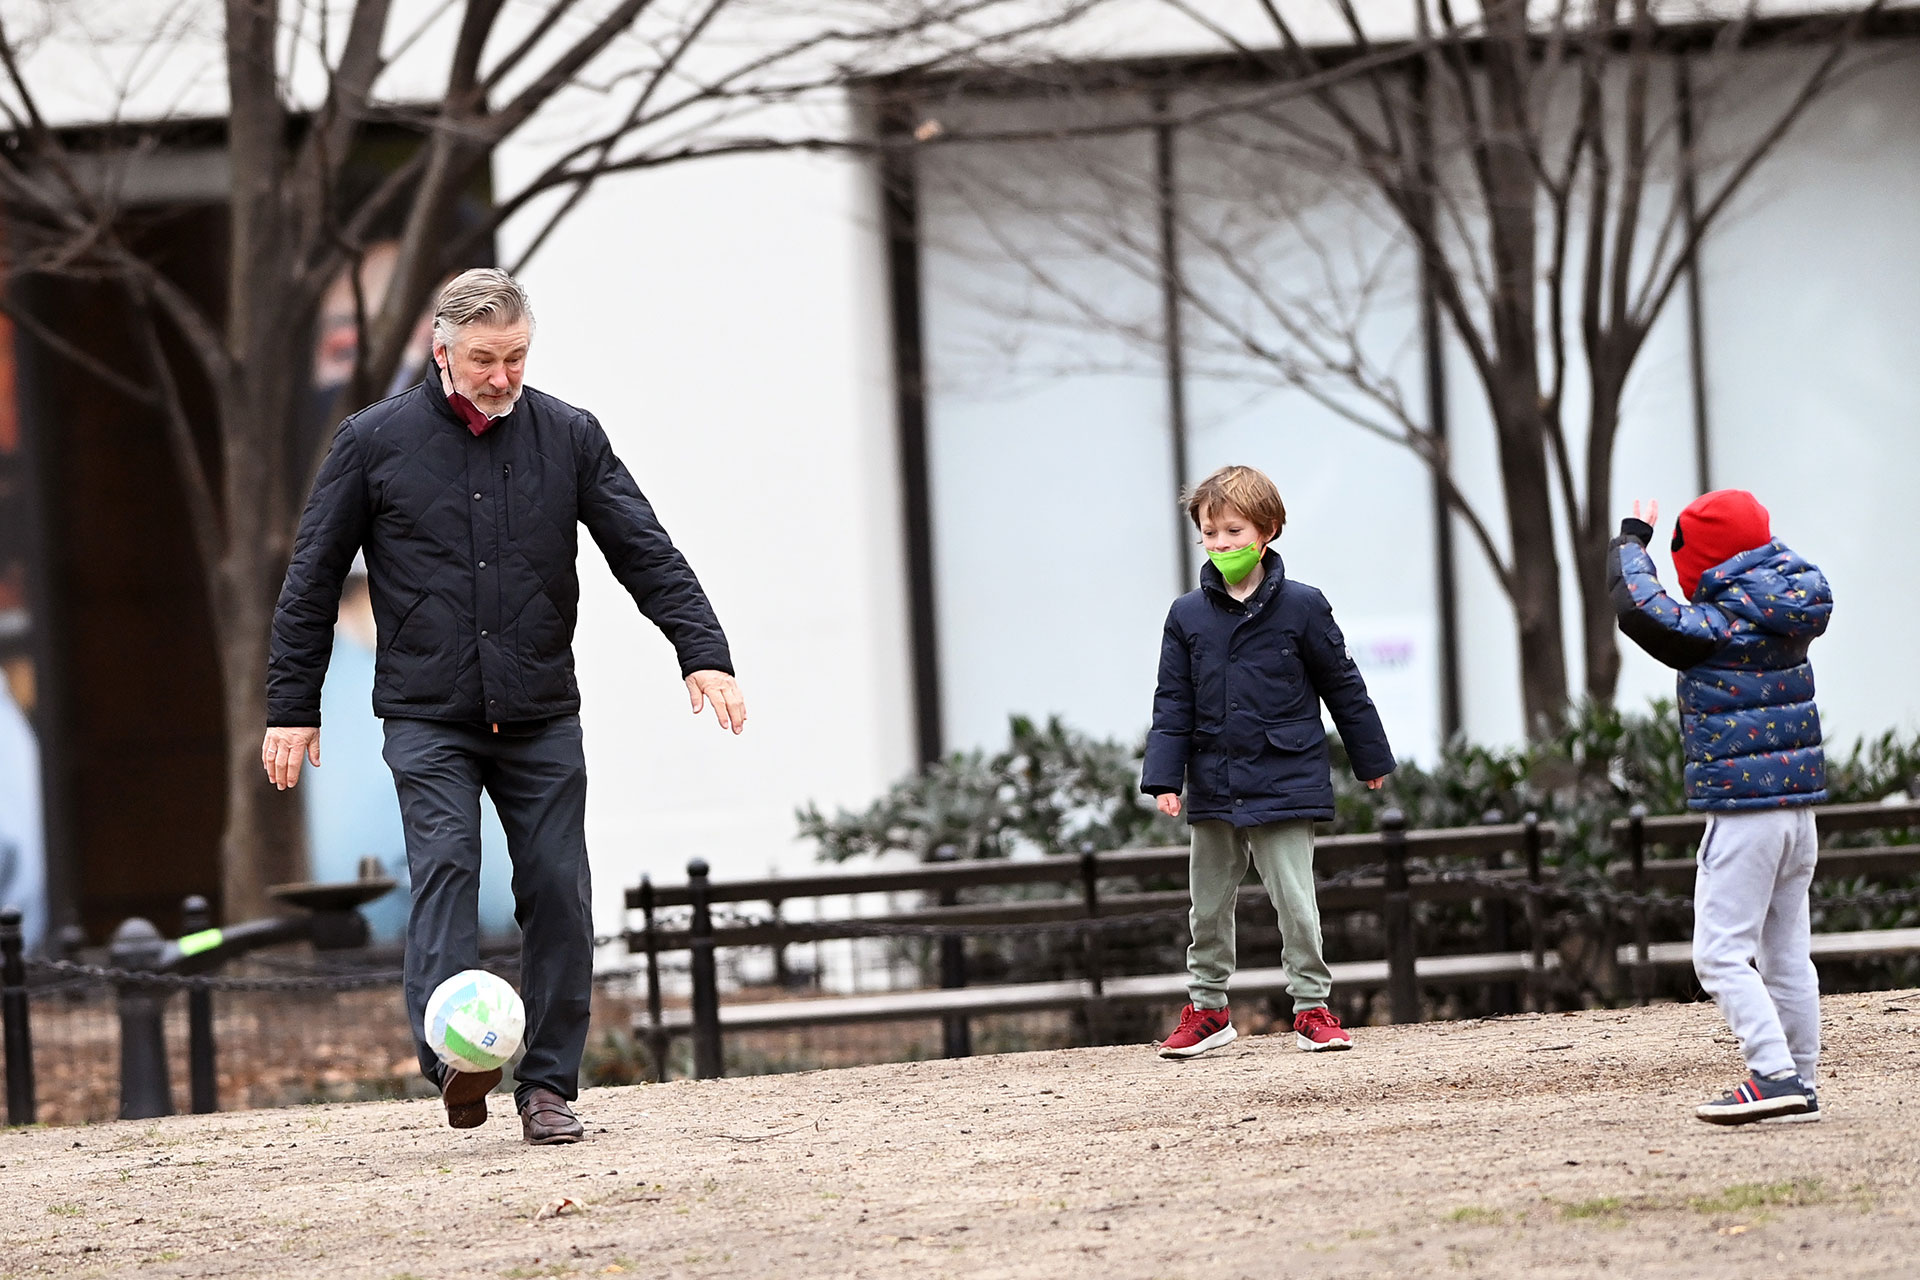 Alec Baldwin disfrutó jugando al fútbol con sus hijos en un parque de Nueva York. Todos le hicieron frente al frío usando el abrigo adecuado y disfrutaron de una tarde al aire libre